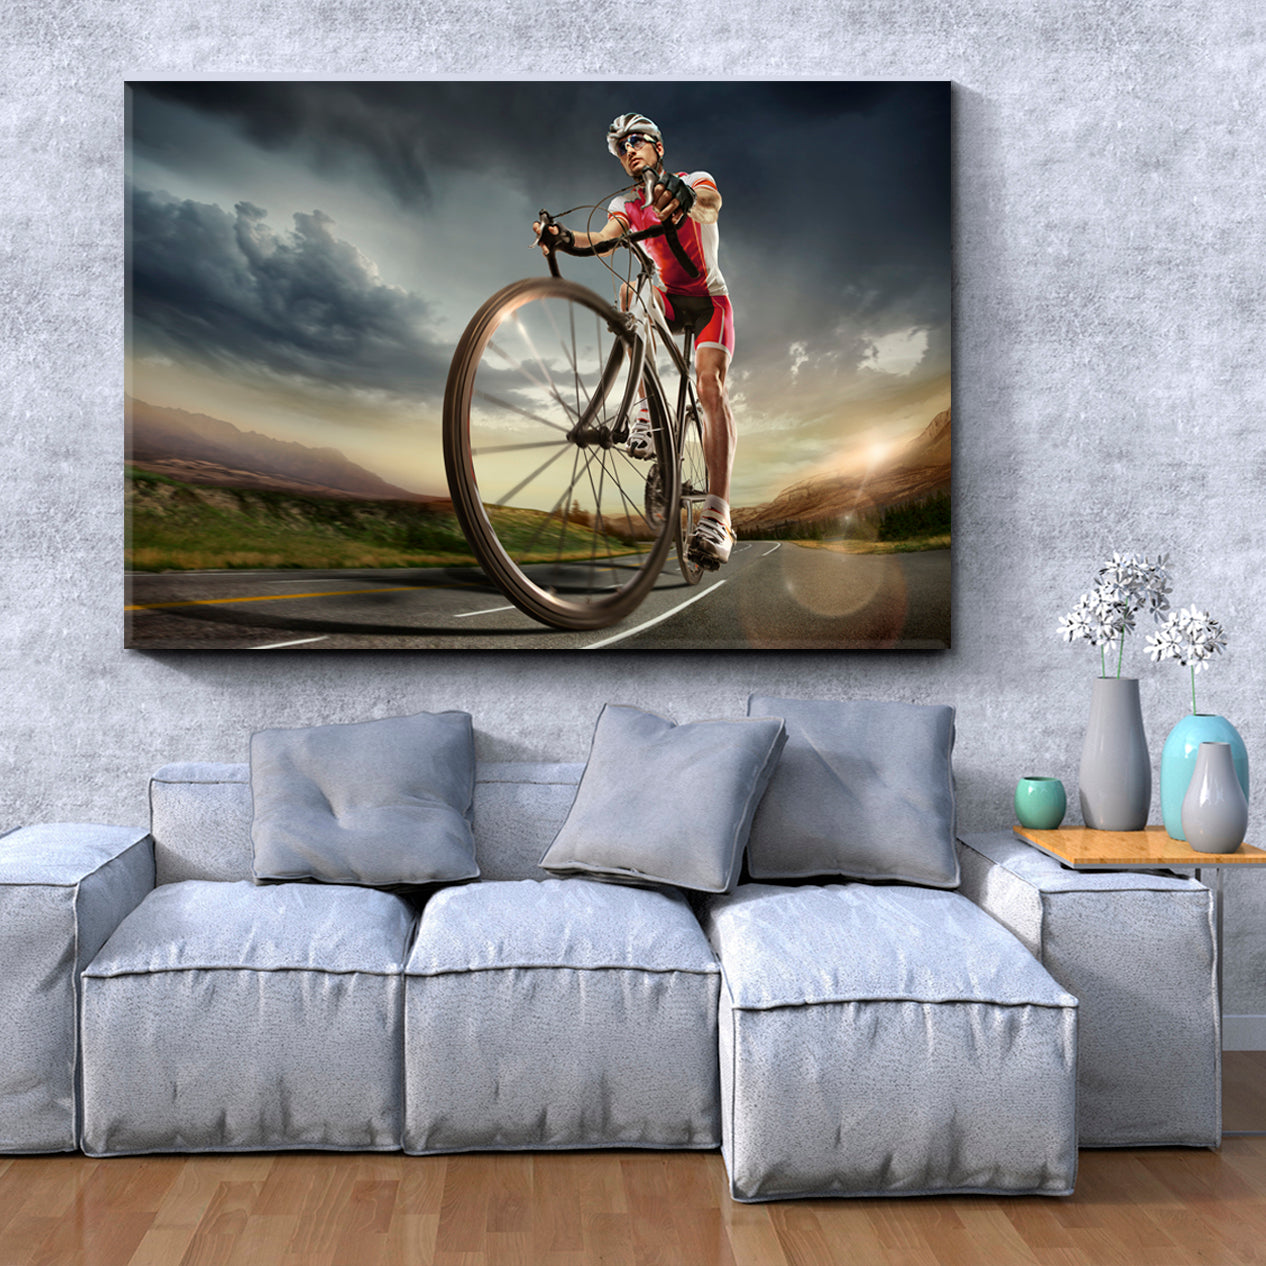 Road Cyclist Sport Active Lifestyle Concept Canvas Print Motivation Sport Poster Print Decor Artesty 1 panel 24" x 16" 